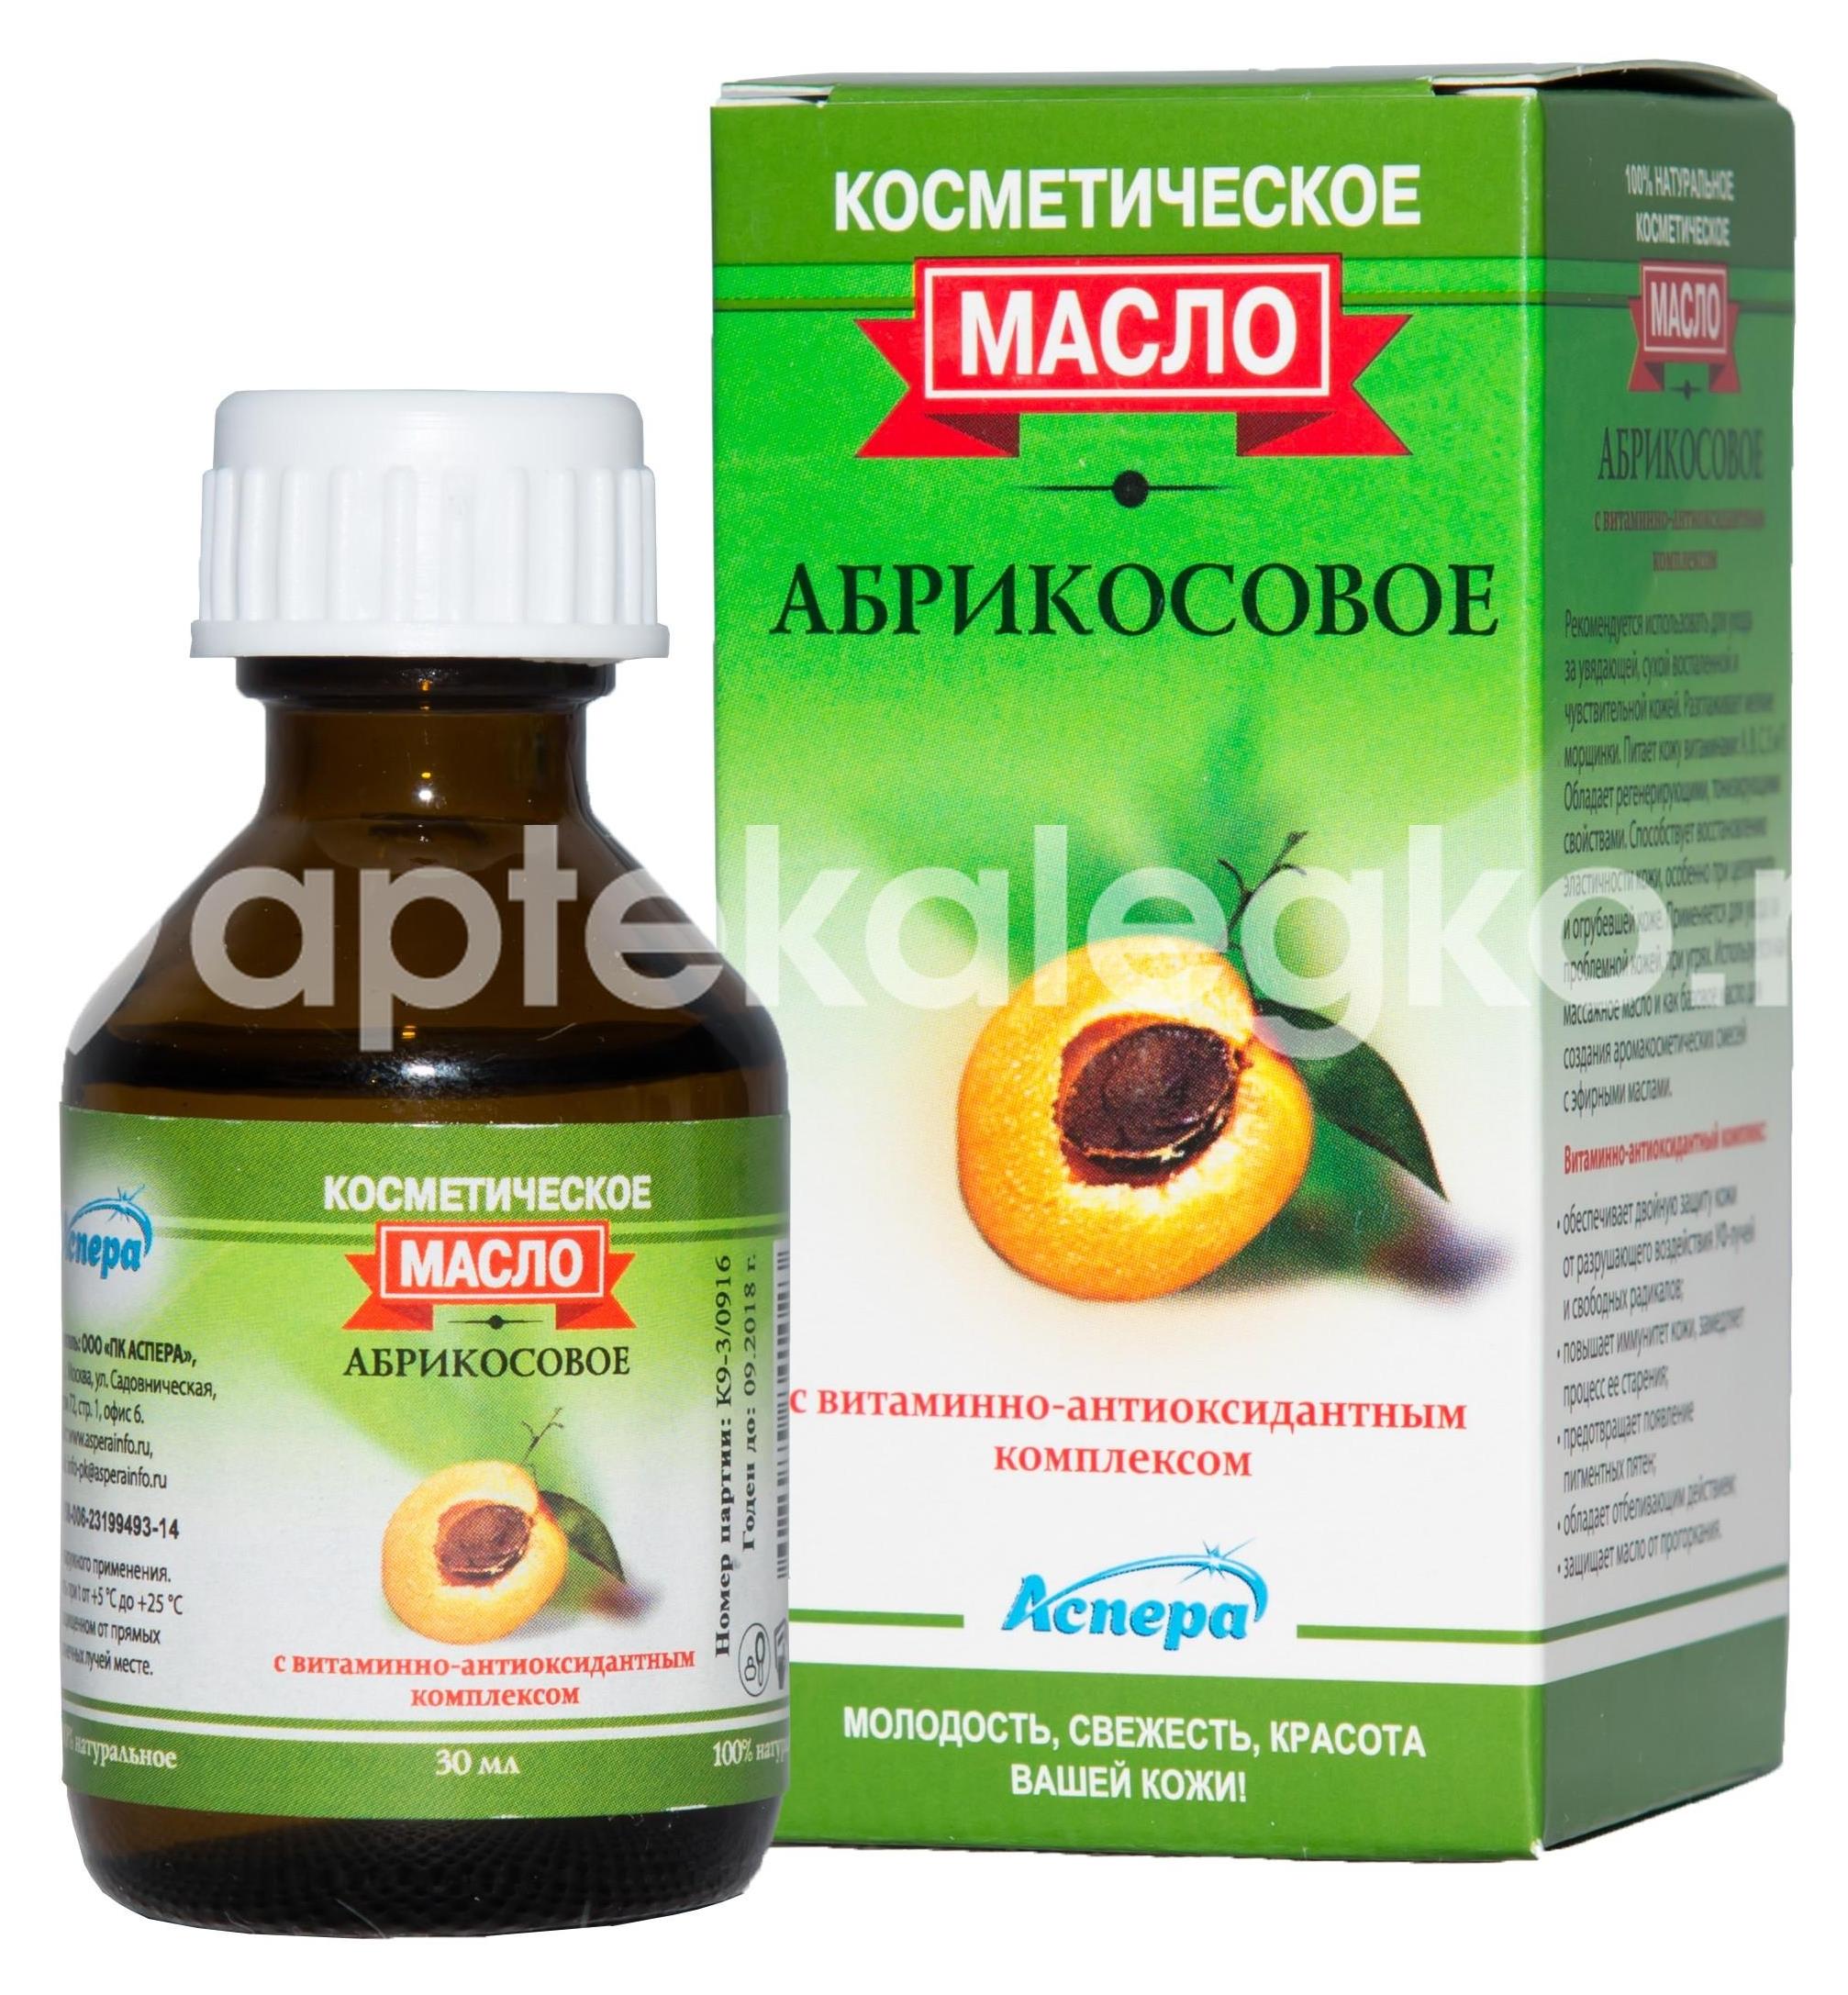 Изображение Аспера масло абрикосовое косметическое  витаминно-антиоксидантным  комплексом  30мл.